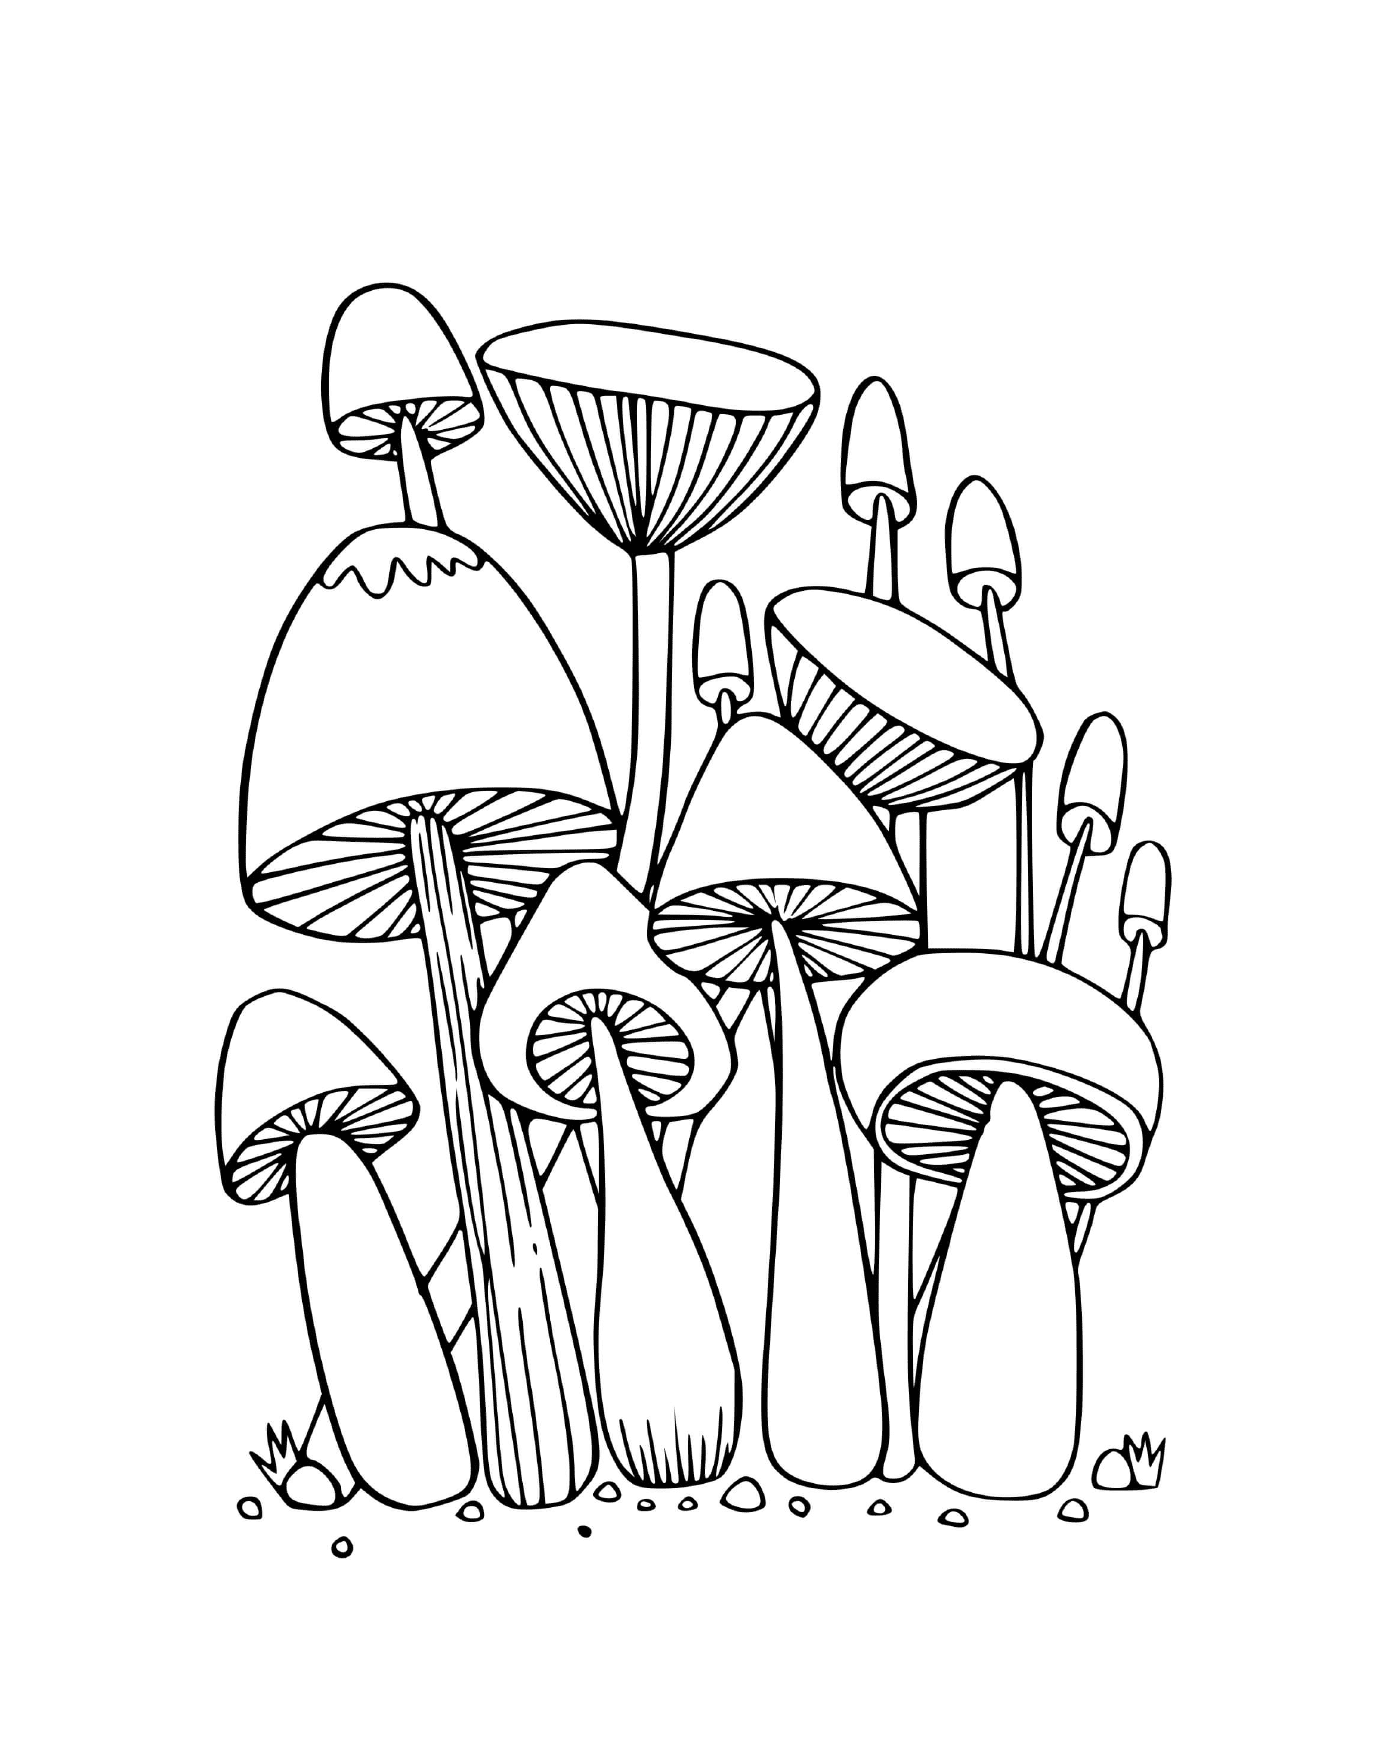  草地上的森林蘑菇 